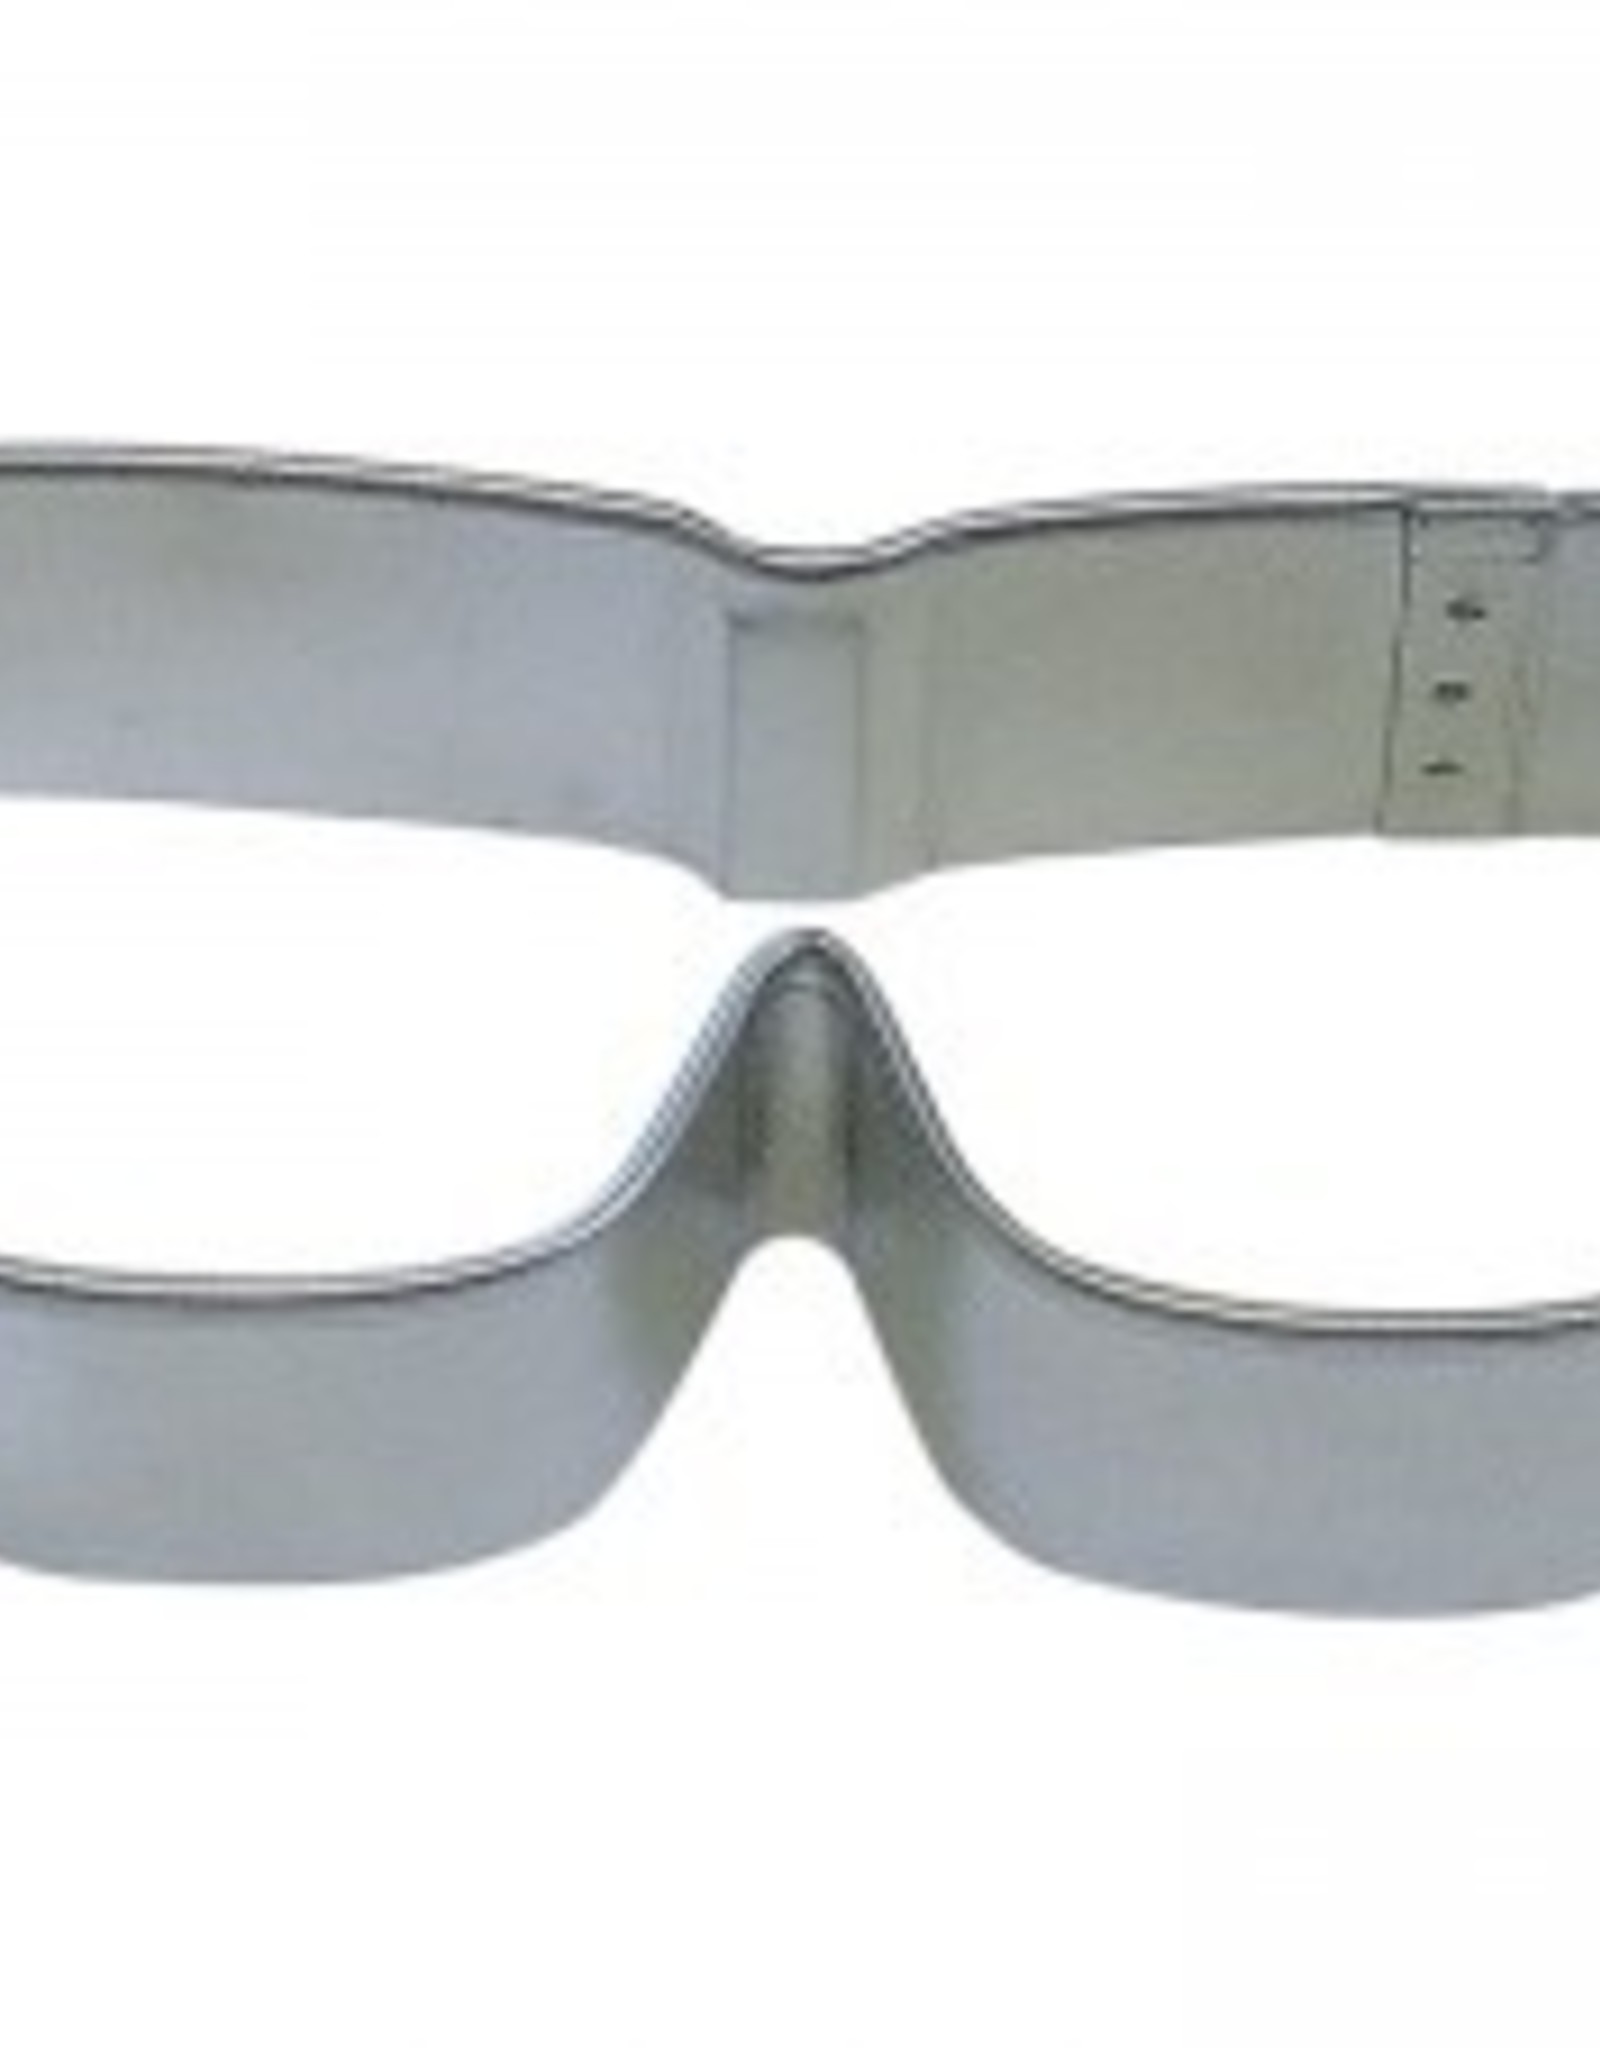 Sunglasses Cookie Cutter (3.5")